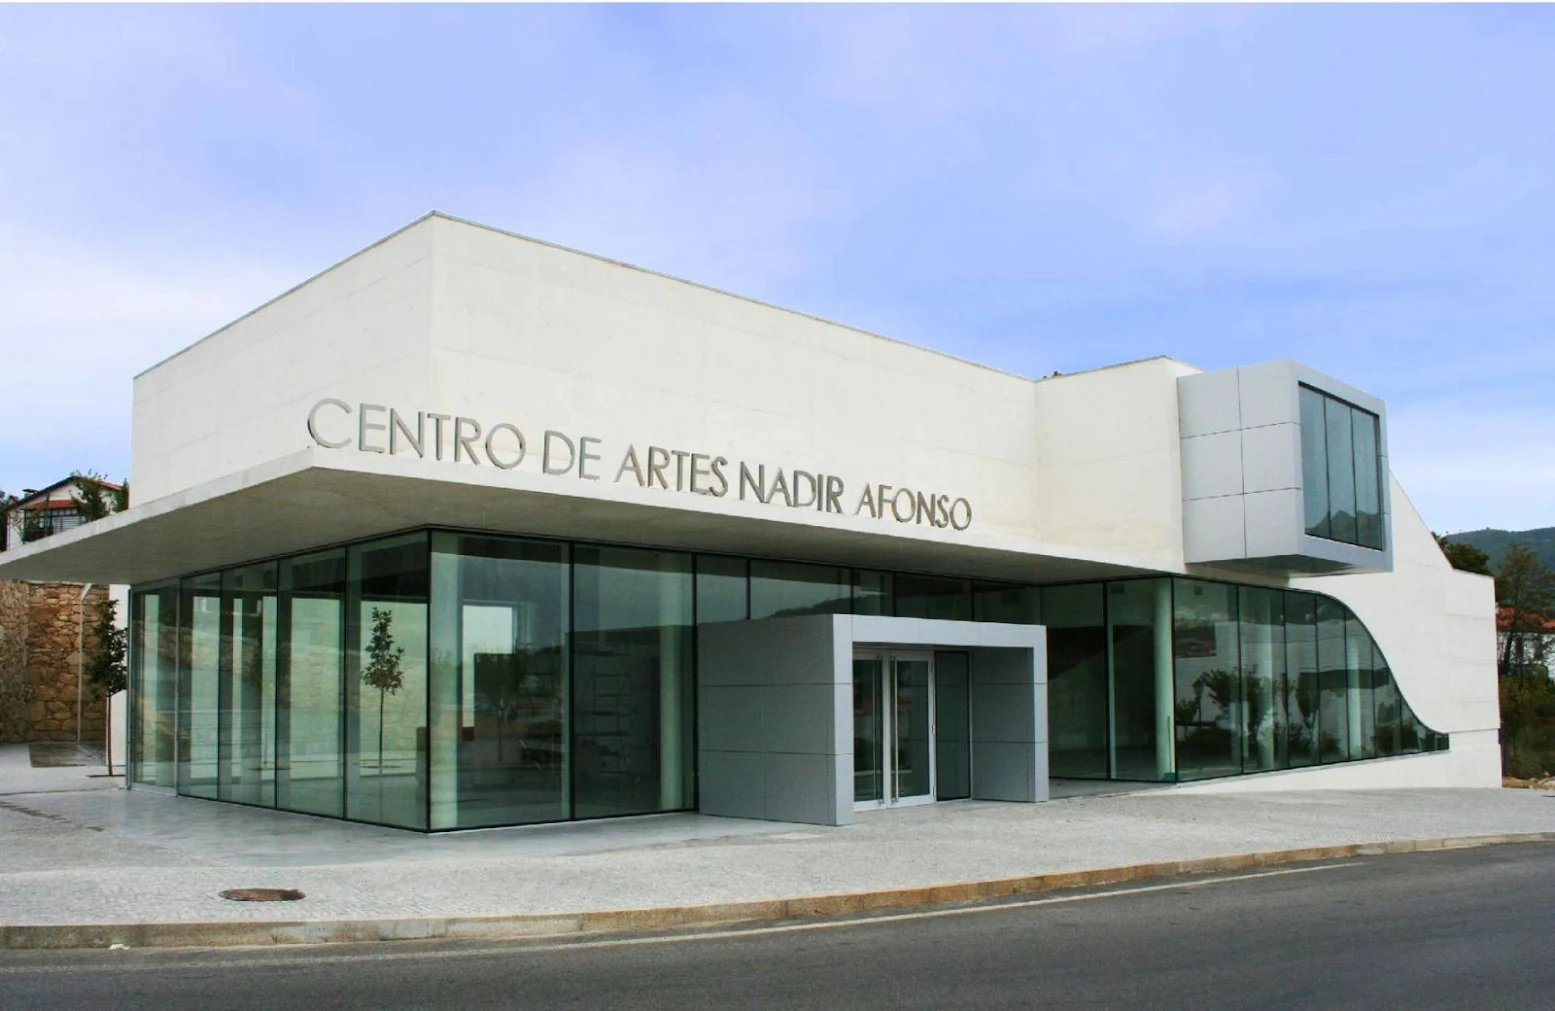 Centro de Artes Nadir Afonso by Louise Braverman